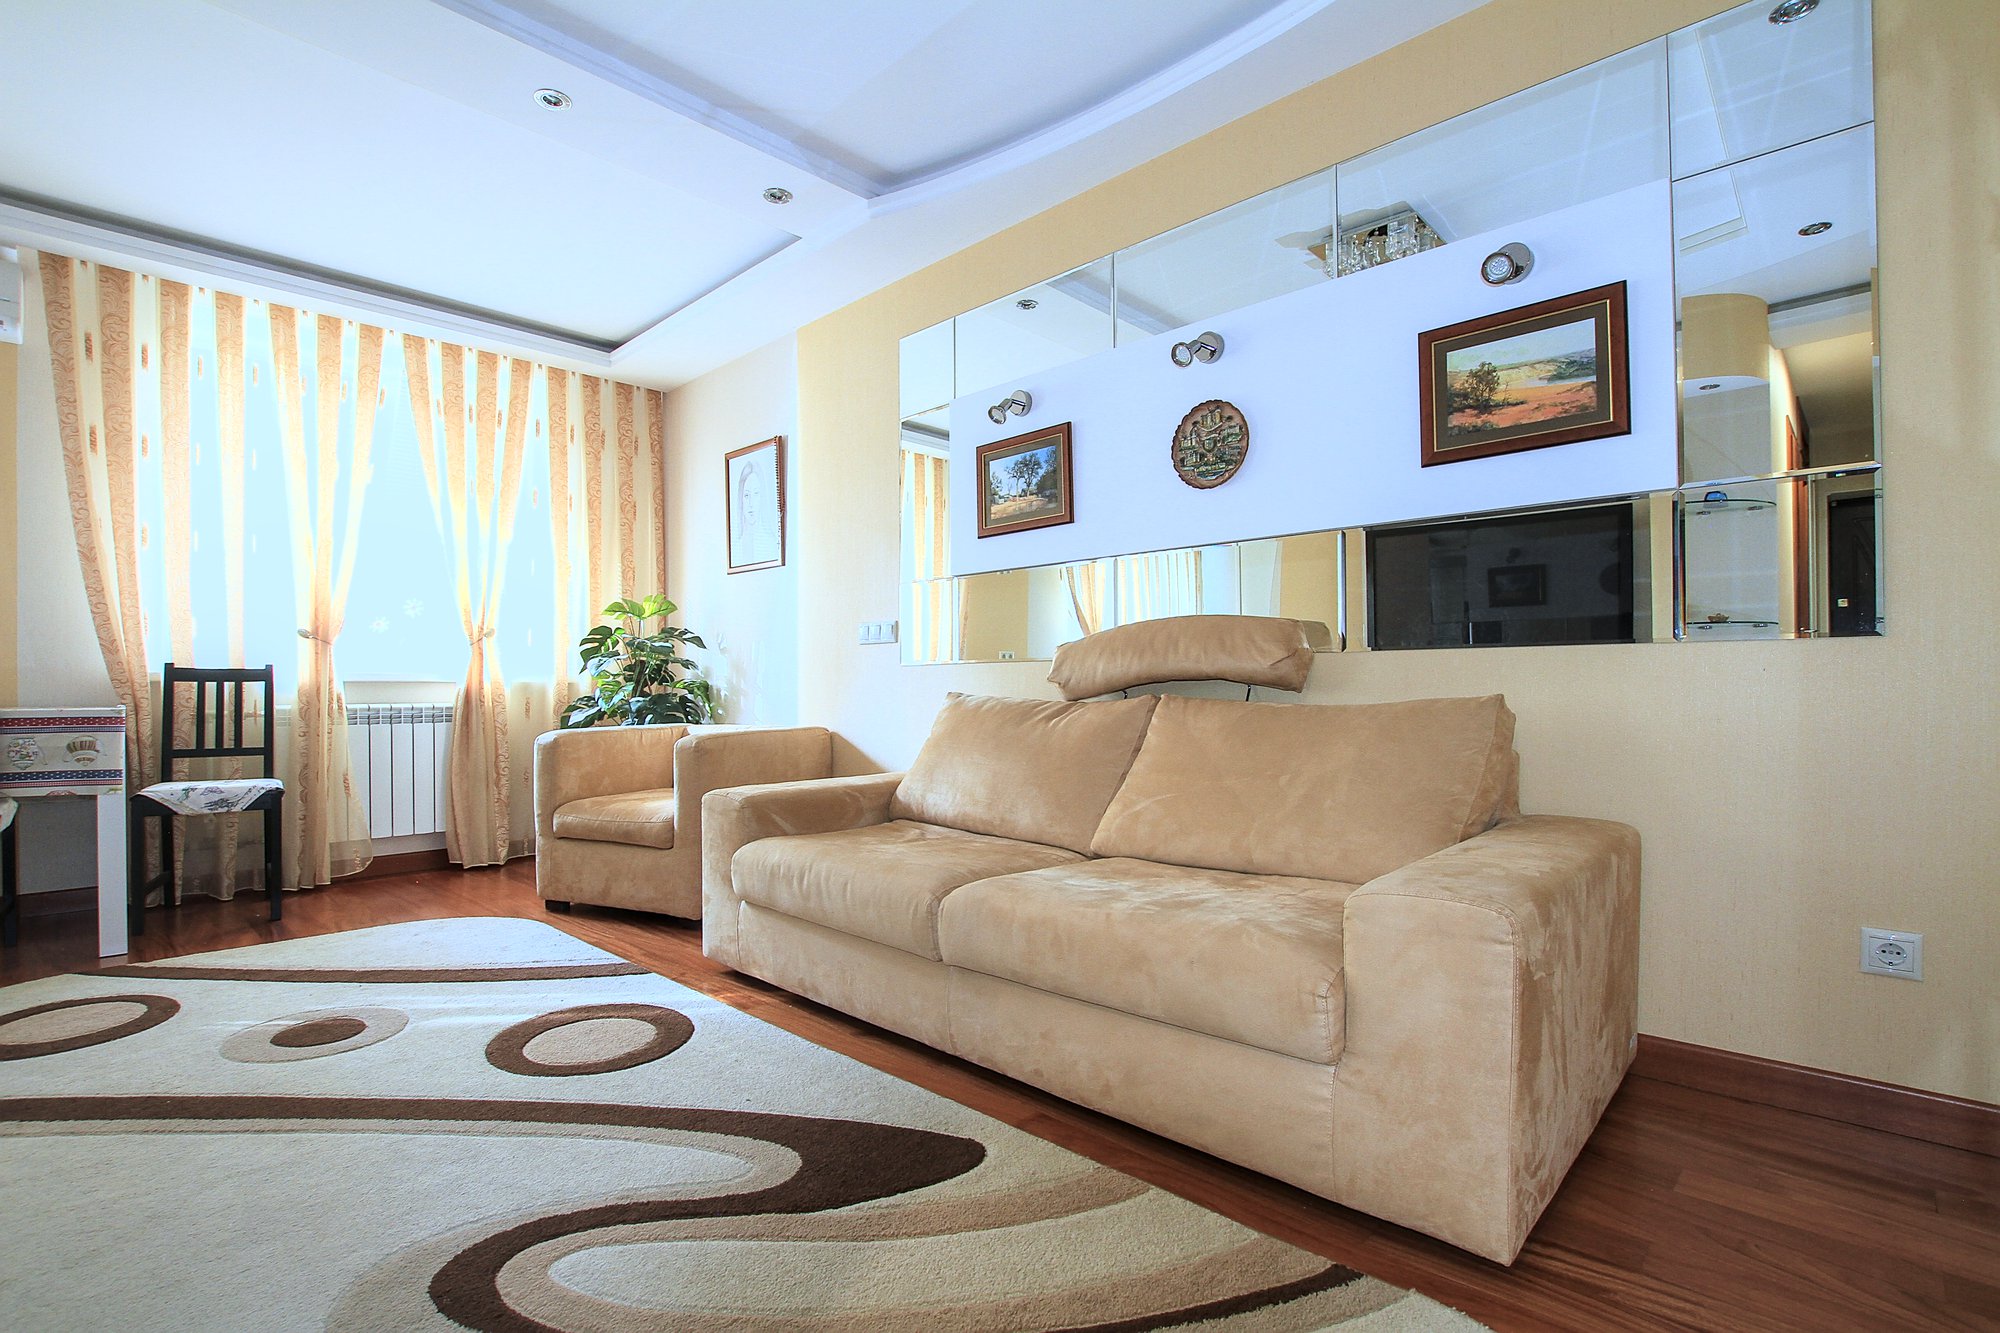 Appartamento in affitto a lungo termine. Chisinau, Botanica: 3 stanze, 2 camere da letto, 70 m²